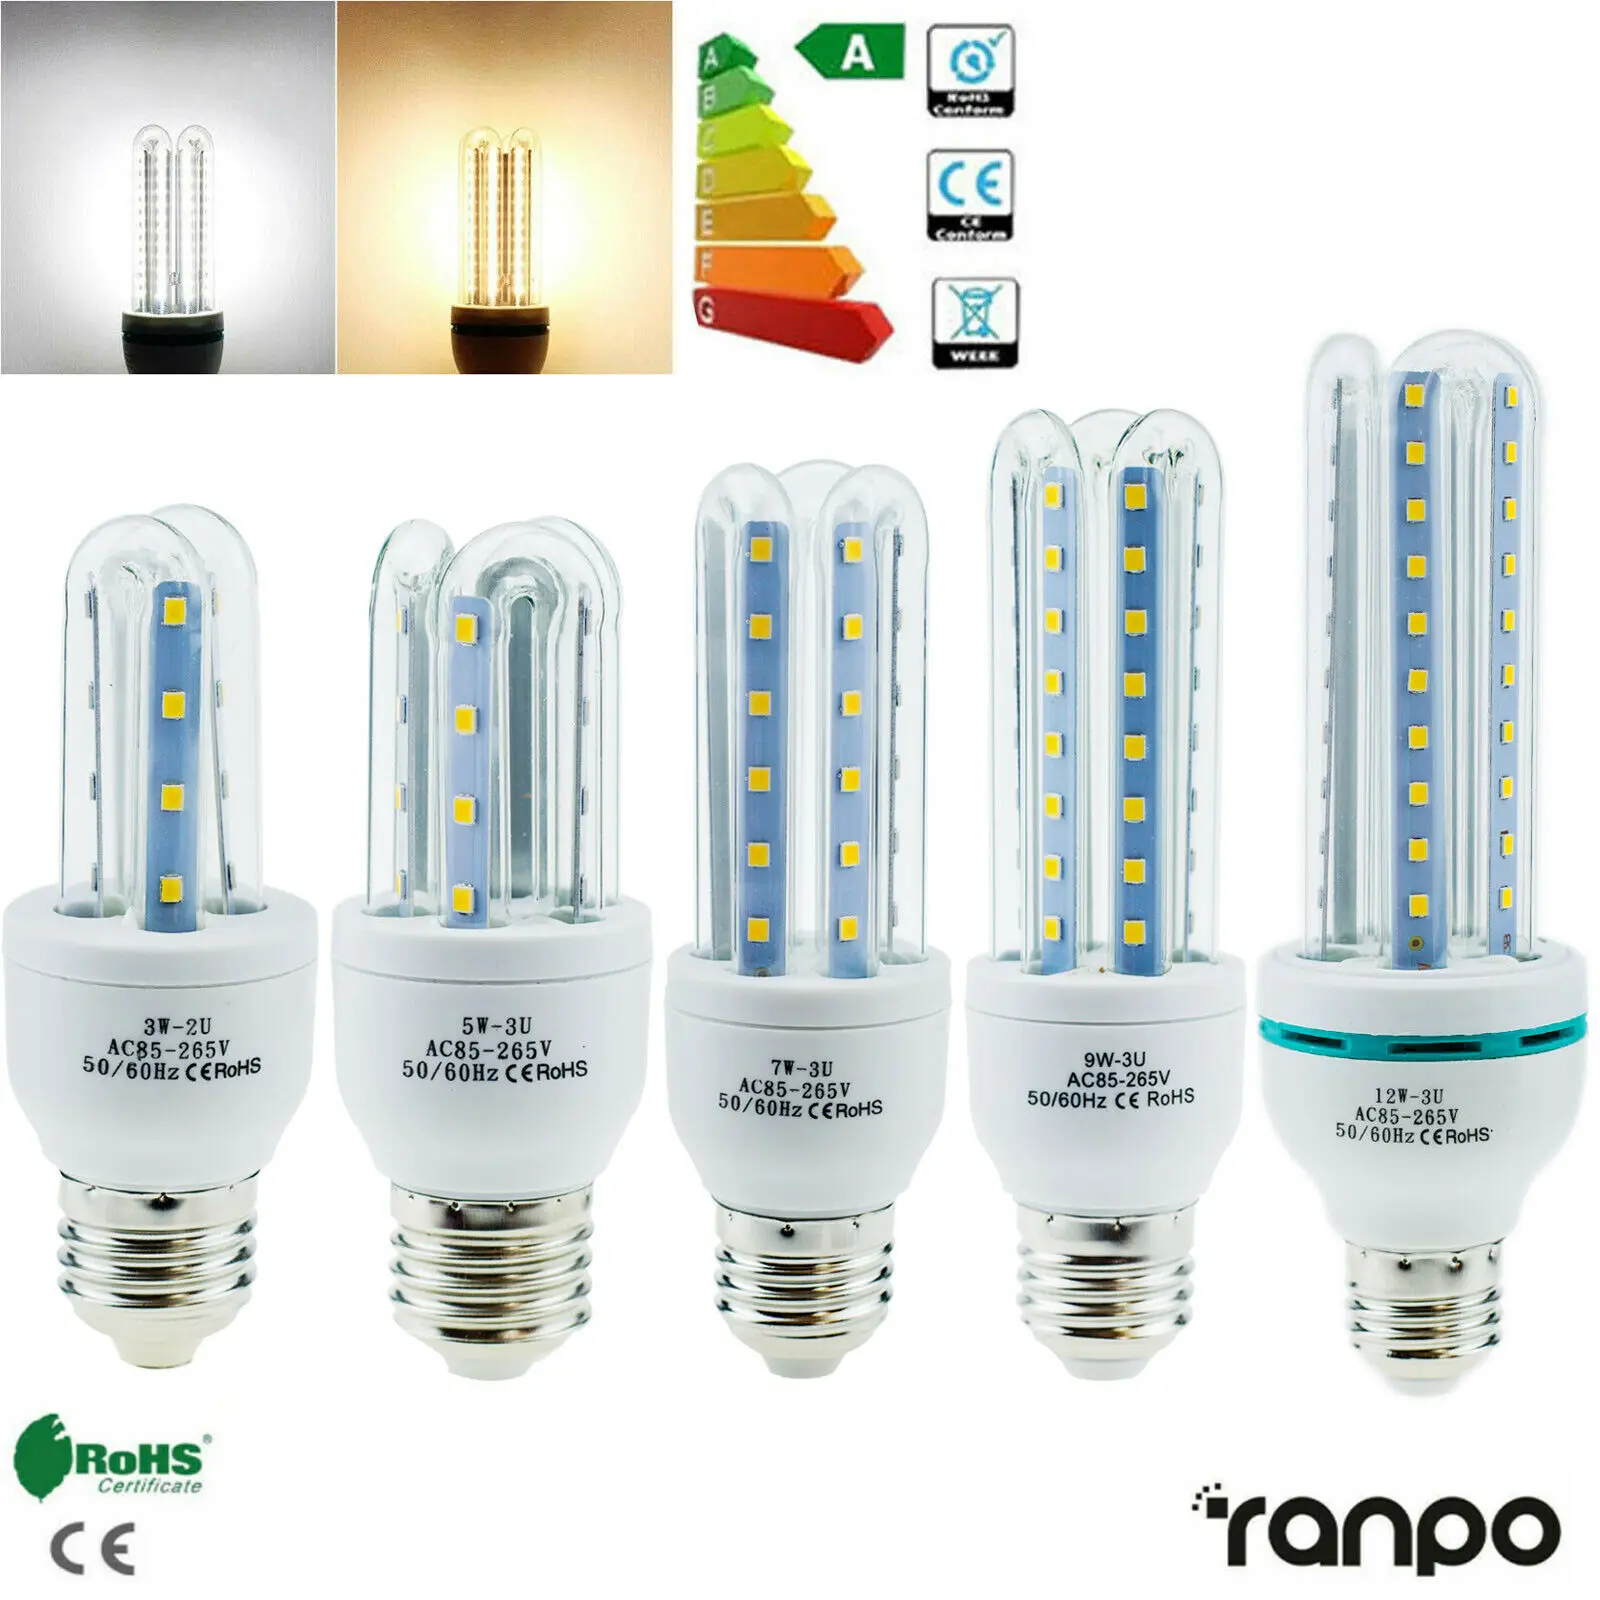 

E27 3W 5W 7W 9W 12W LED Corn Light Bulbs 85-265V U White Lamp Energy Saving Bombilla Chandelier Lighting For Home Office